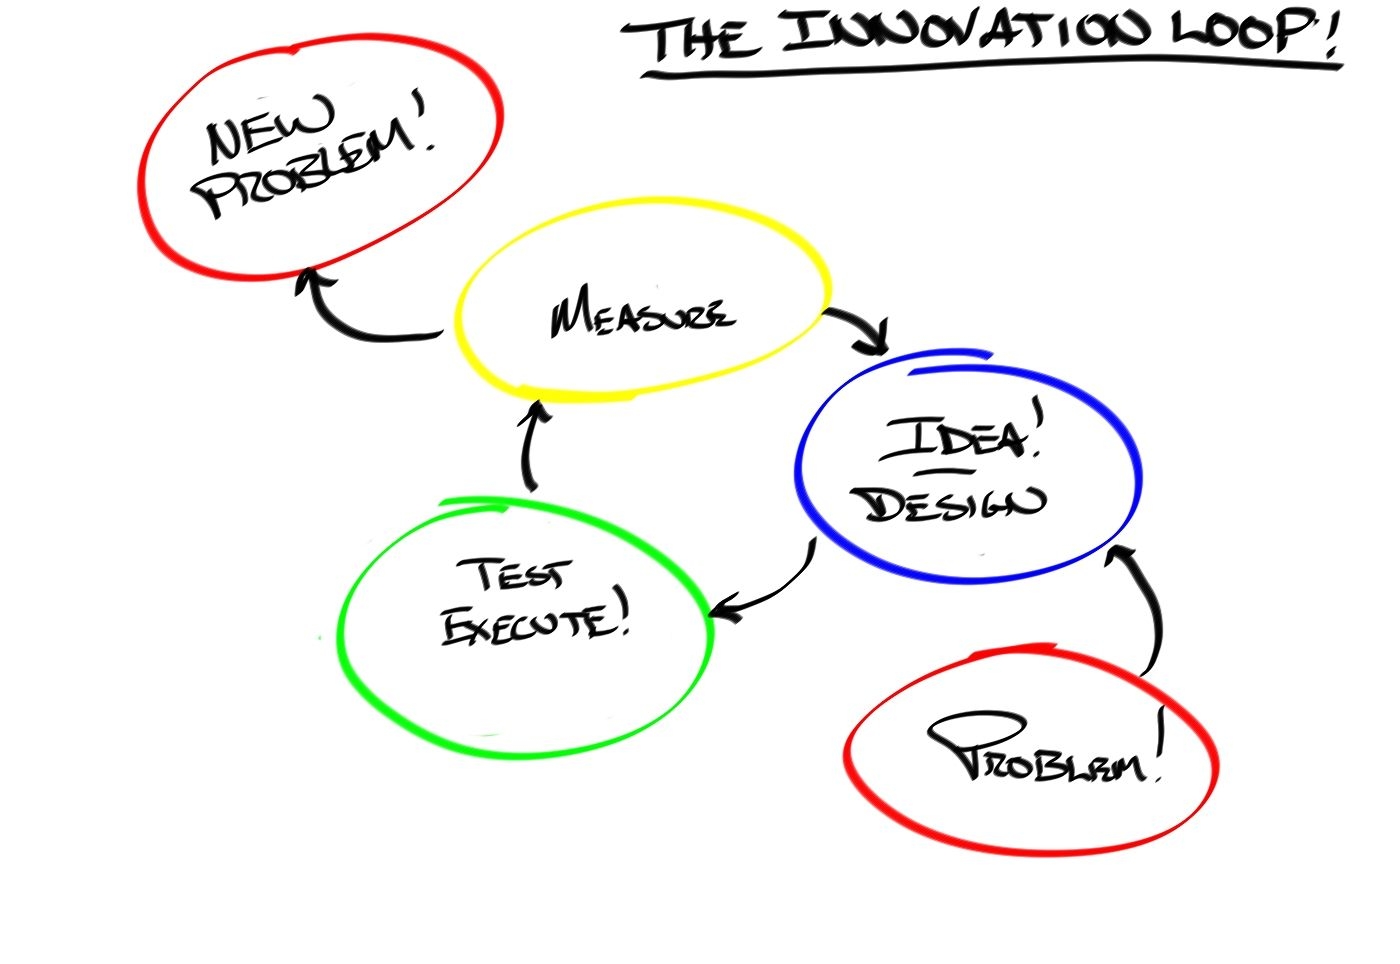 The Innovation loop - Clean.jpg